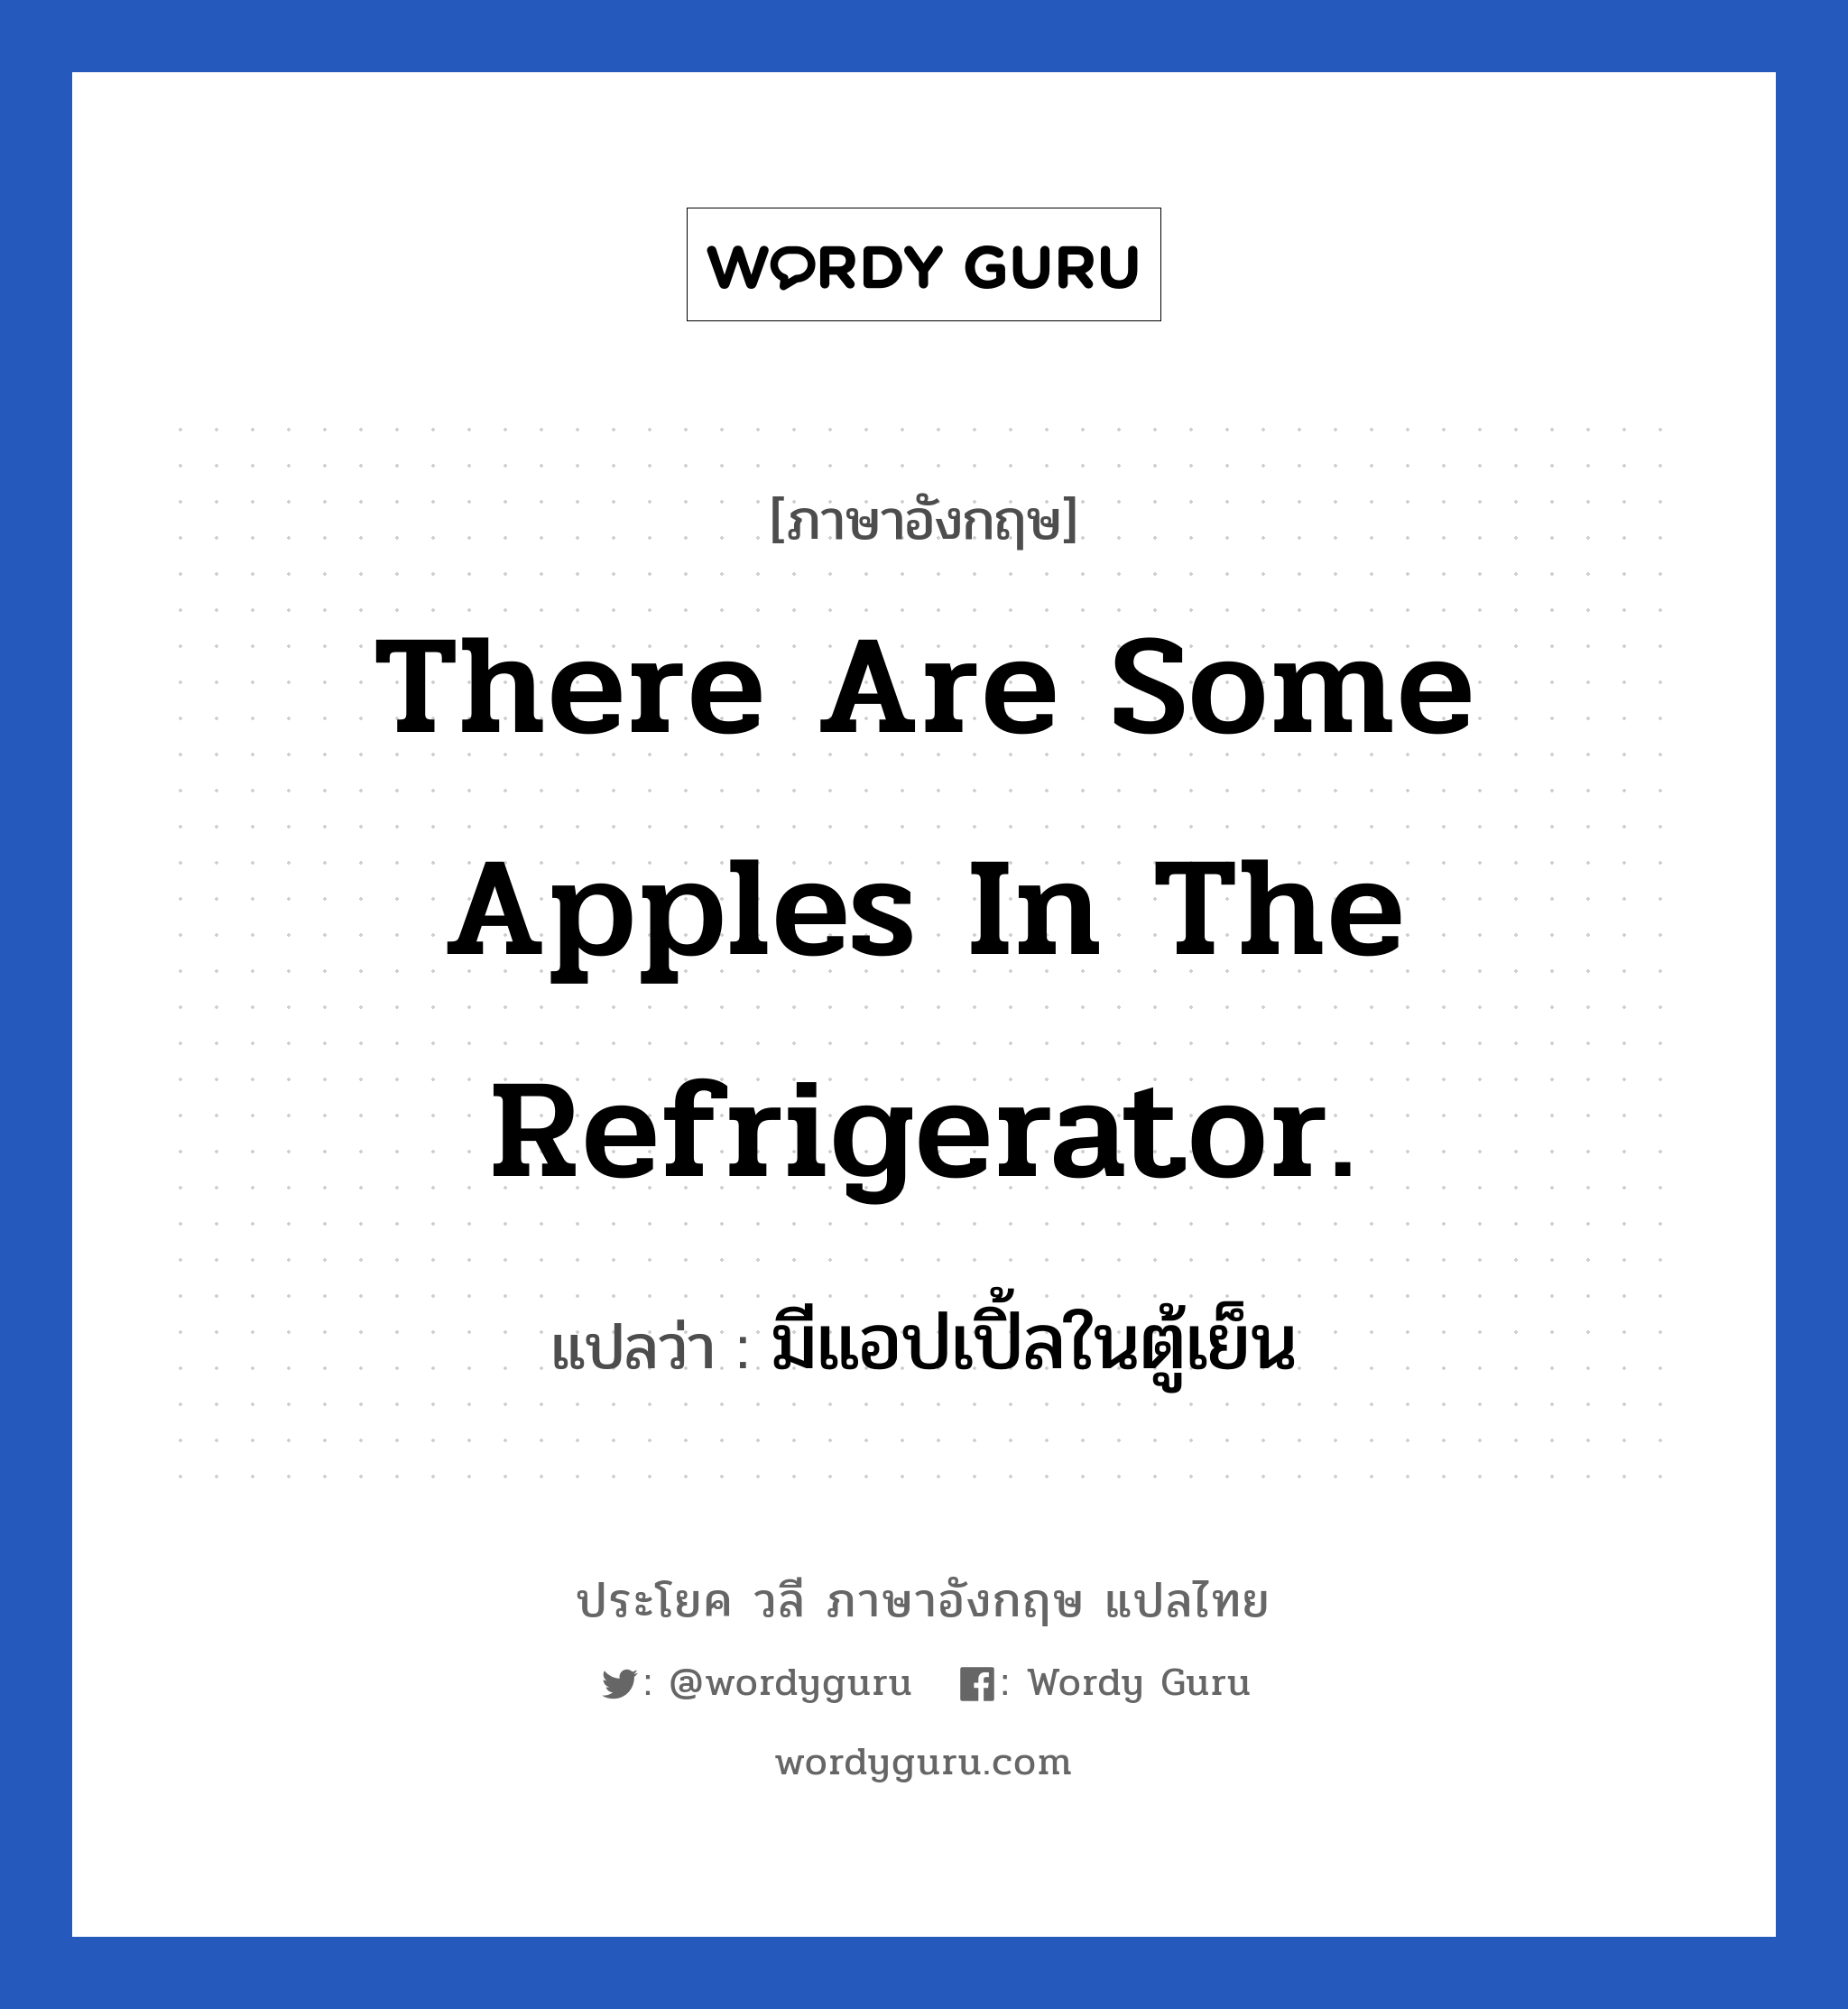 มีแอปเปิ้ลในตู้เย็น ภาษาอังกฤษ?, วลีภาษาอังกฤษ มีแอปเปิ้ลในตู้เย็น แปลว่า There are some apples in the refrigerator.